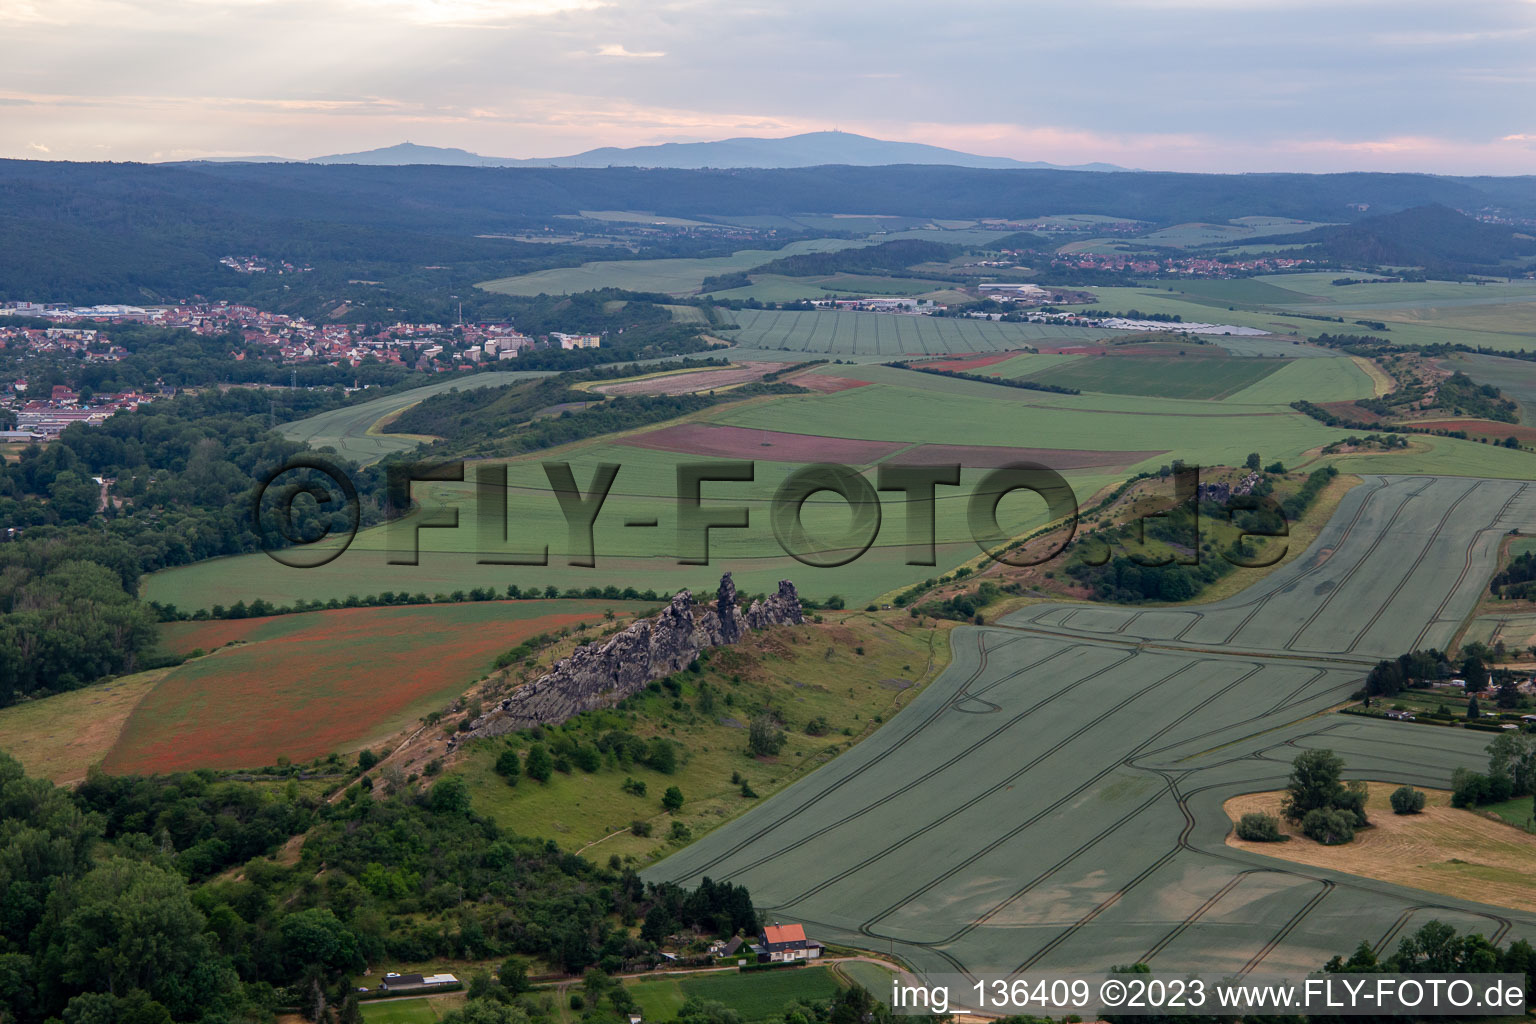 Vue aérienne de Mur du Diable (Königsstein) à le quartier Weddersleben in Thale dans le département Saxe-Anhalt, Allemagne